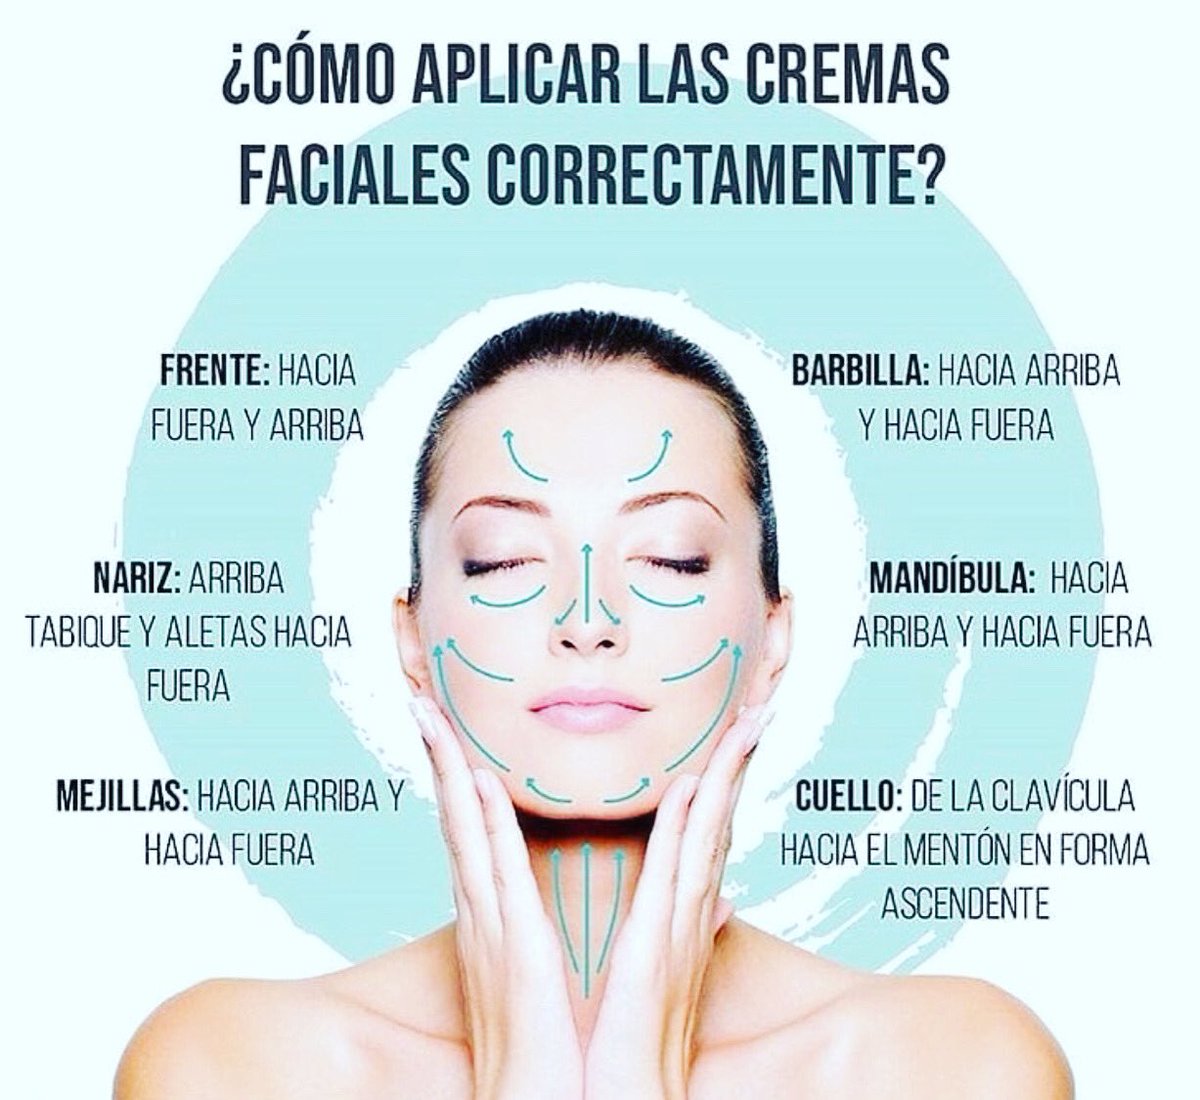 Mujeres On Top på Twitter: "Aplica tu crema facial correctamente #piel # belleza #mujer #bienestar #salud #tips https://t.co/lDtDByRNvB" / Twitter